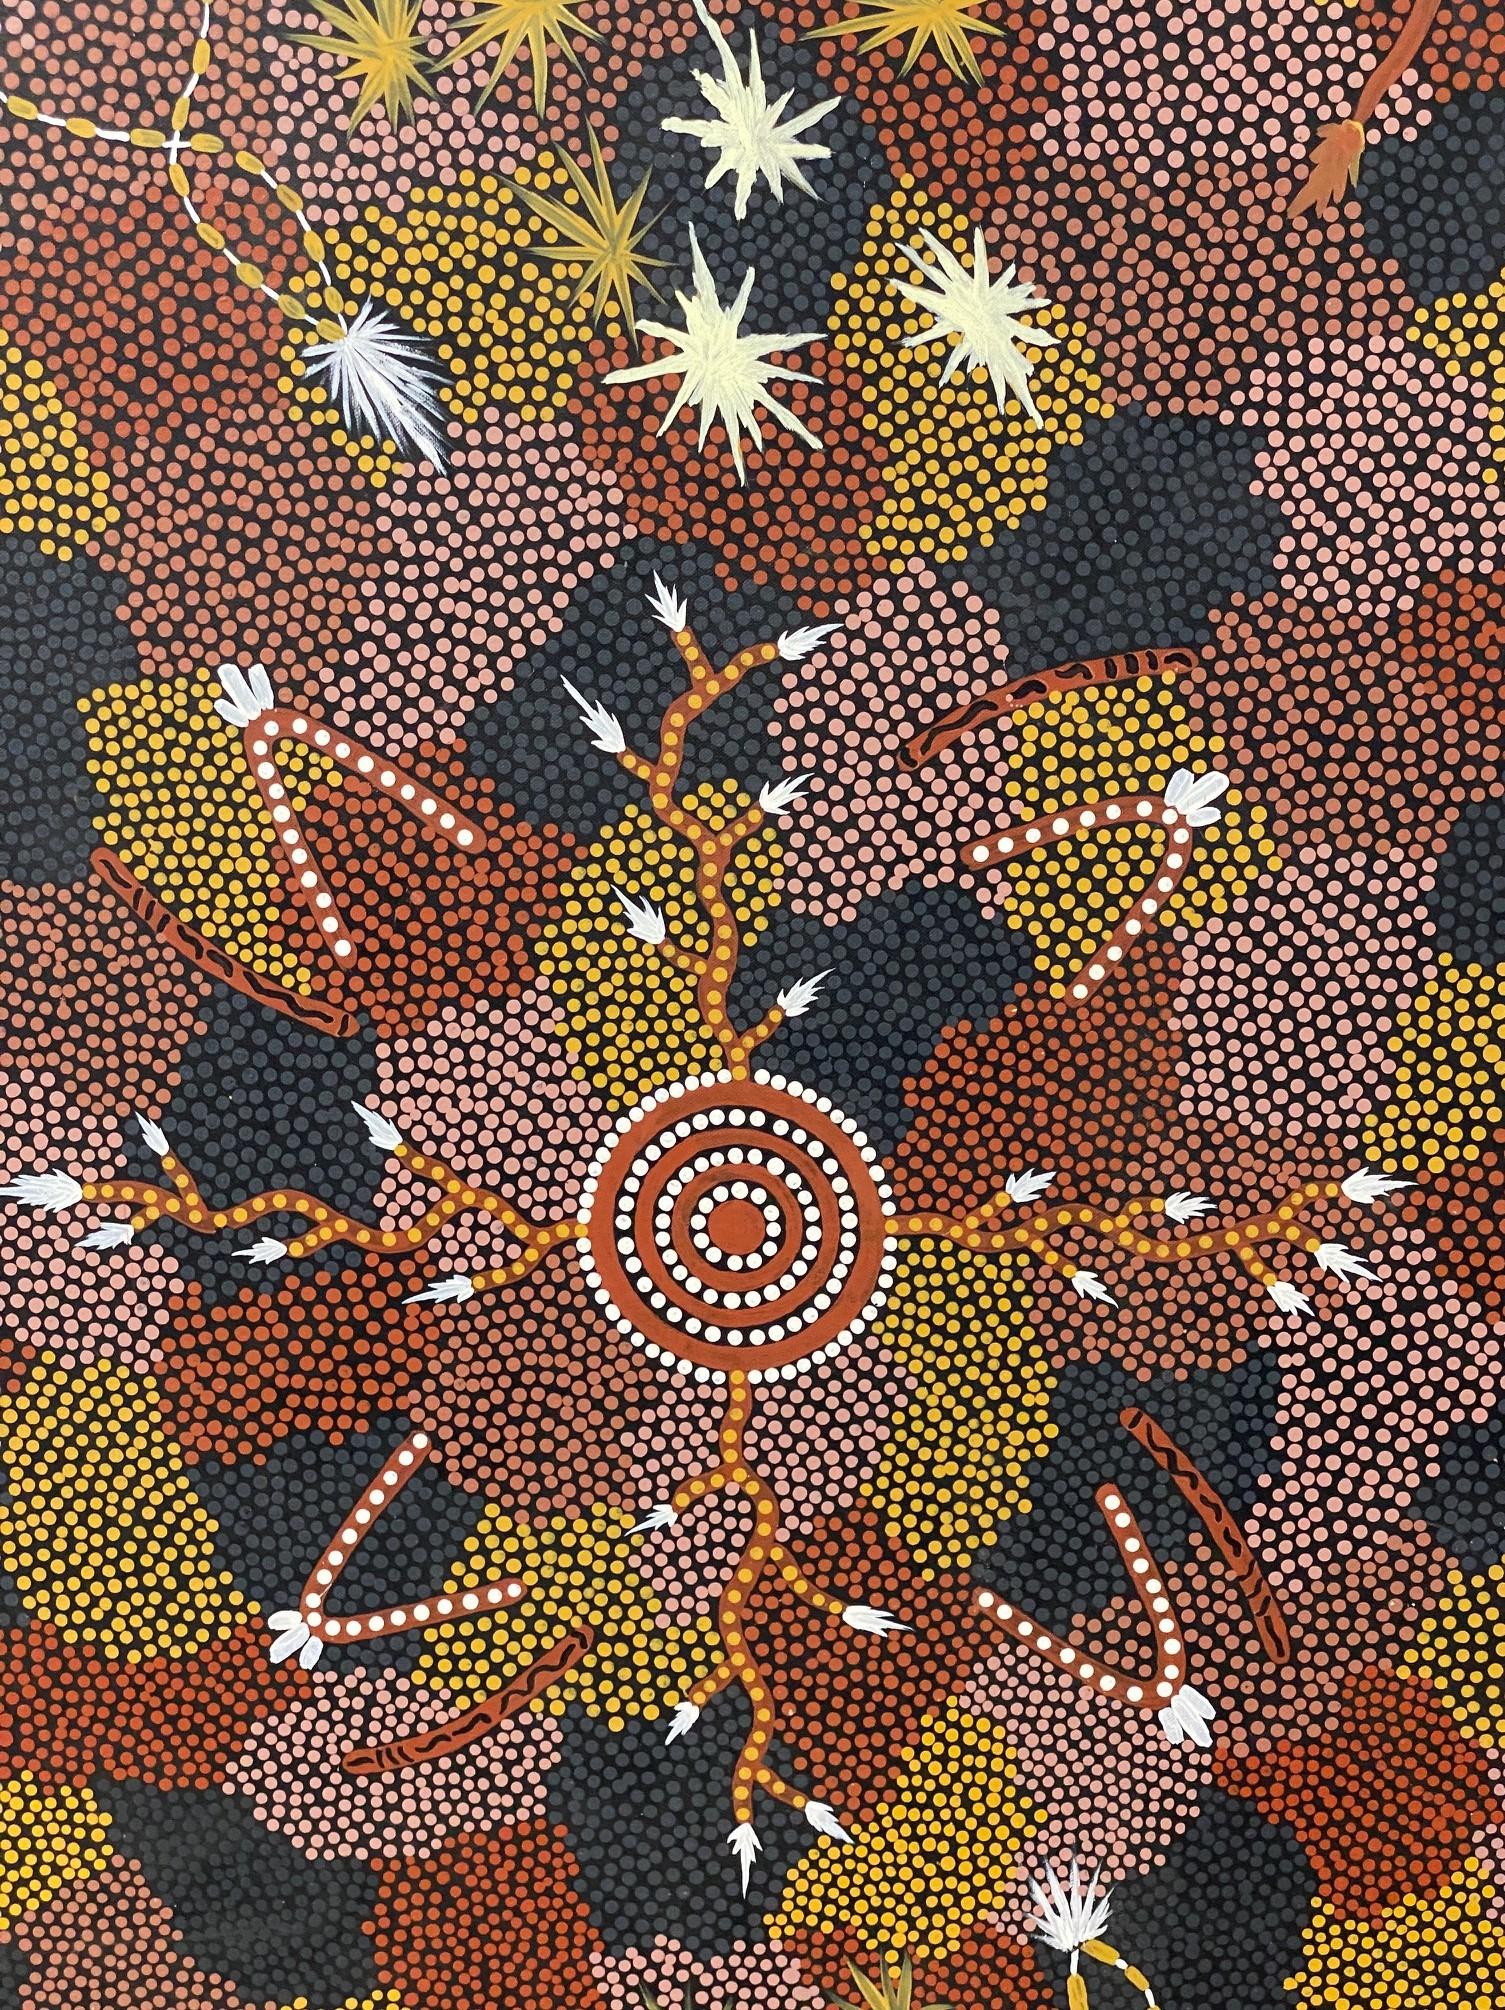 tjapaltjarri aboriginal